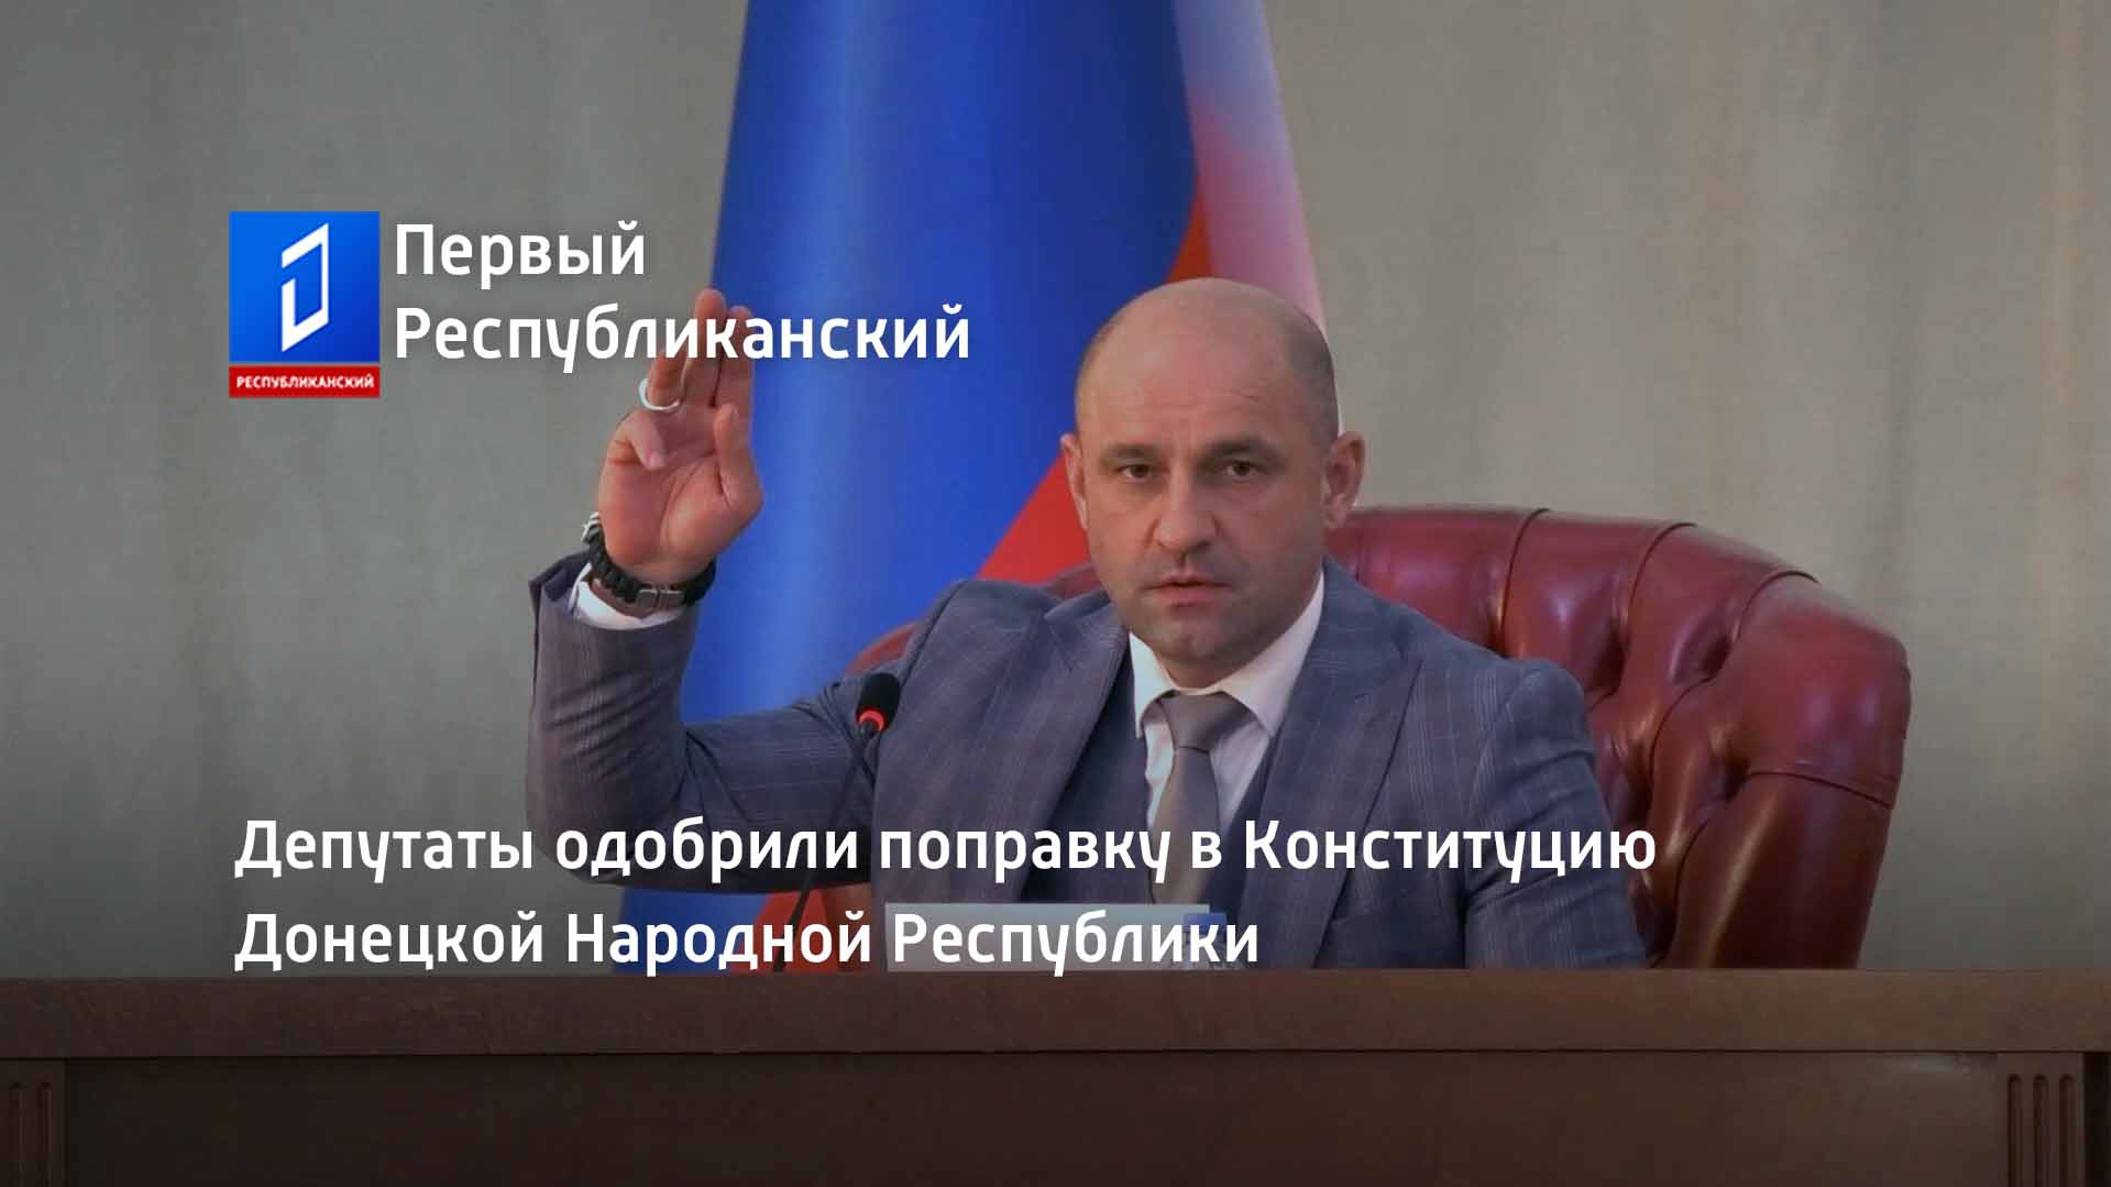 Депутаты одобрили поправку в Конституцию Донецкой Народной Республики